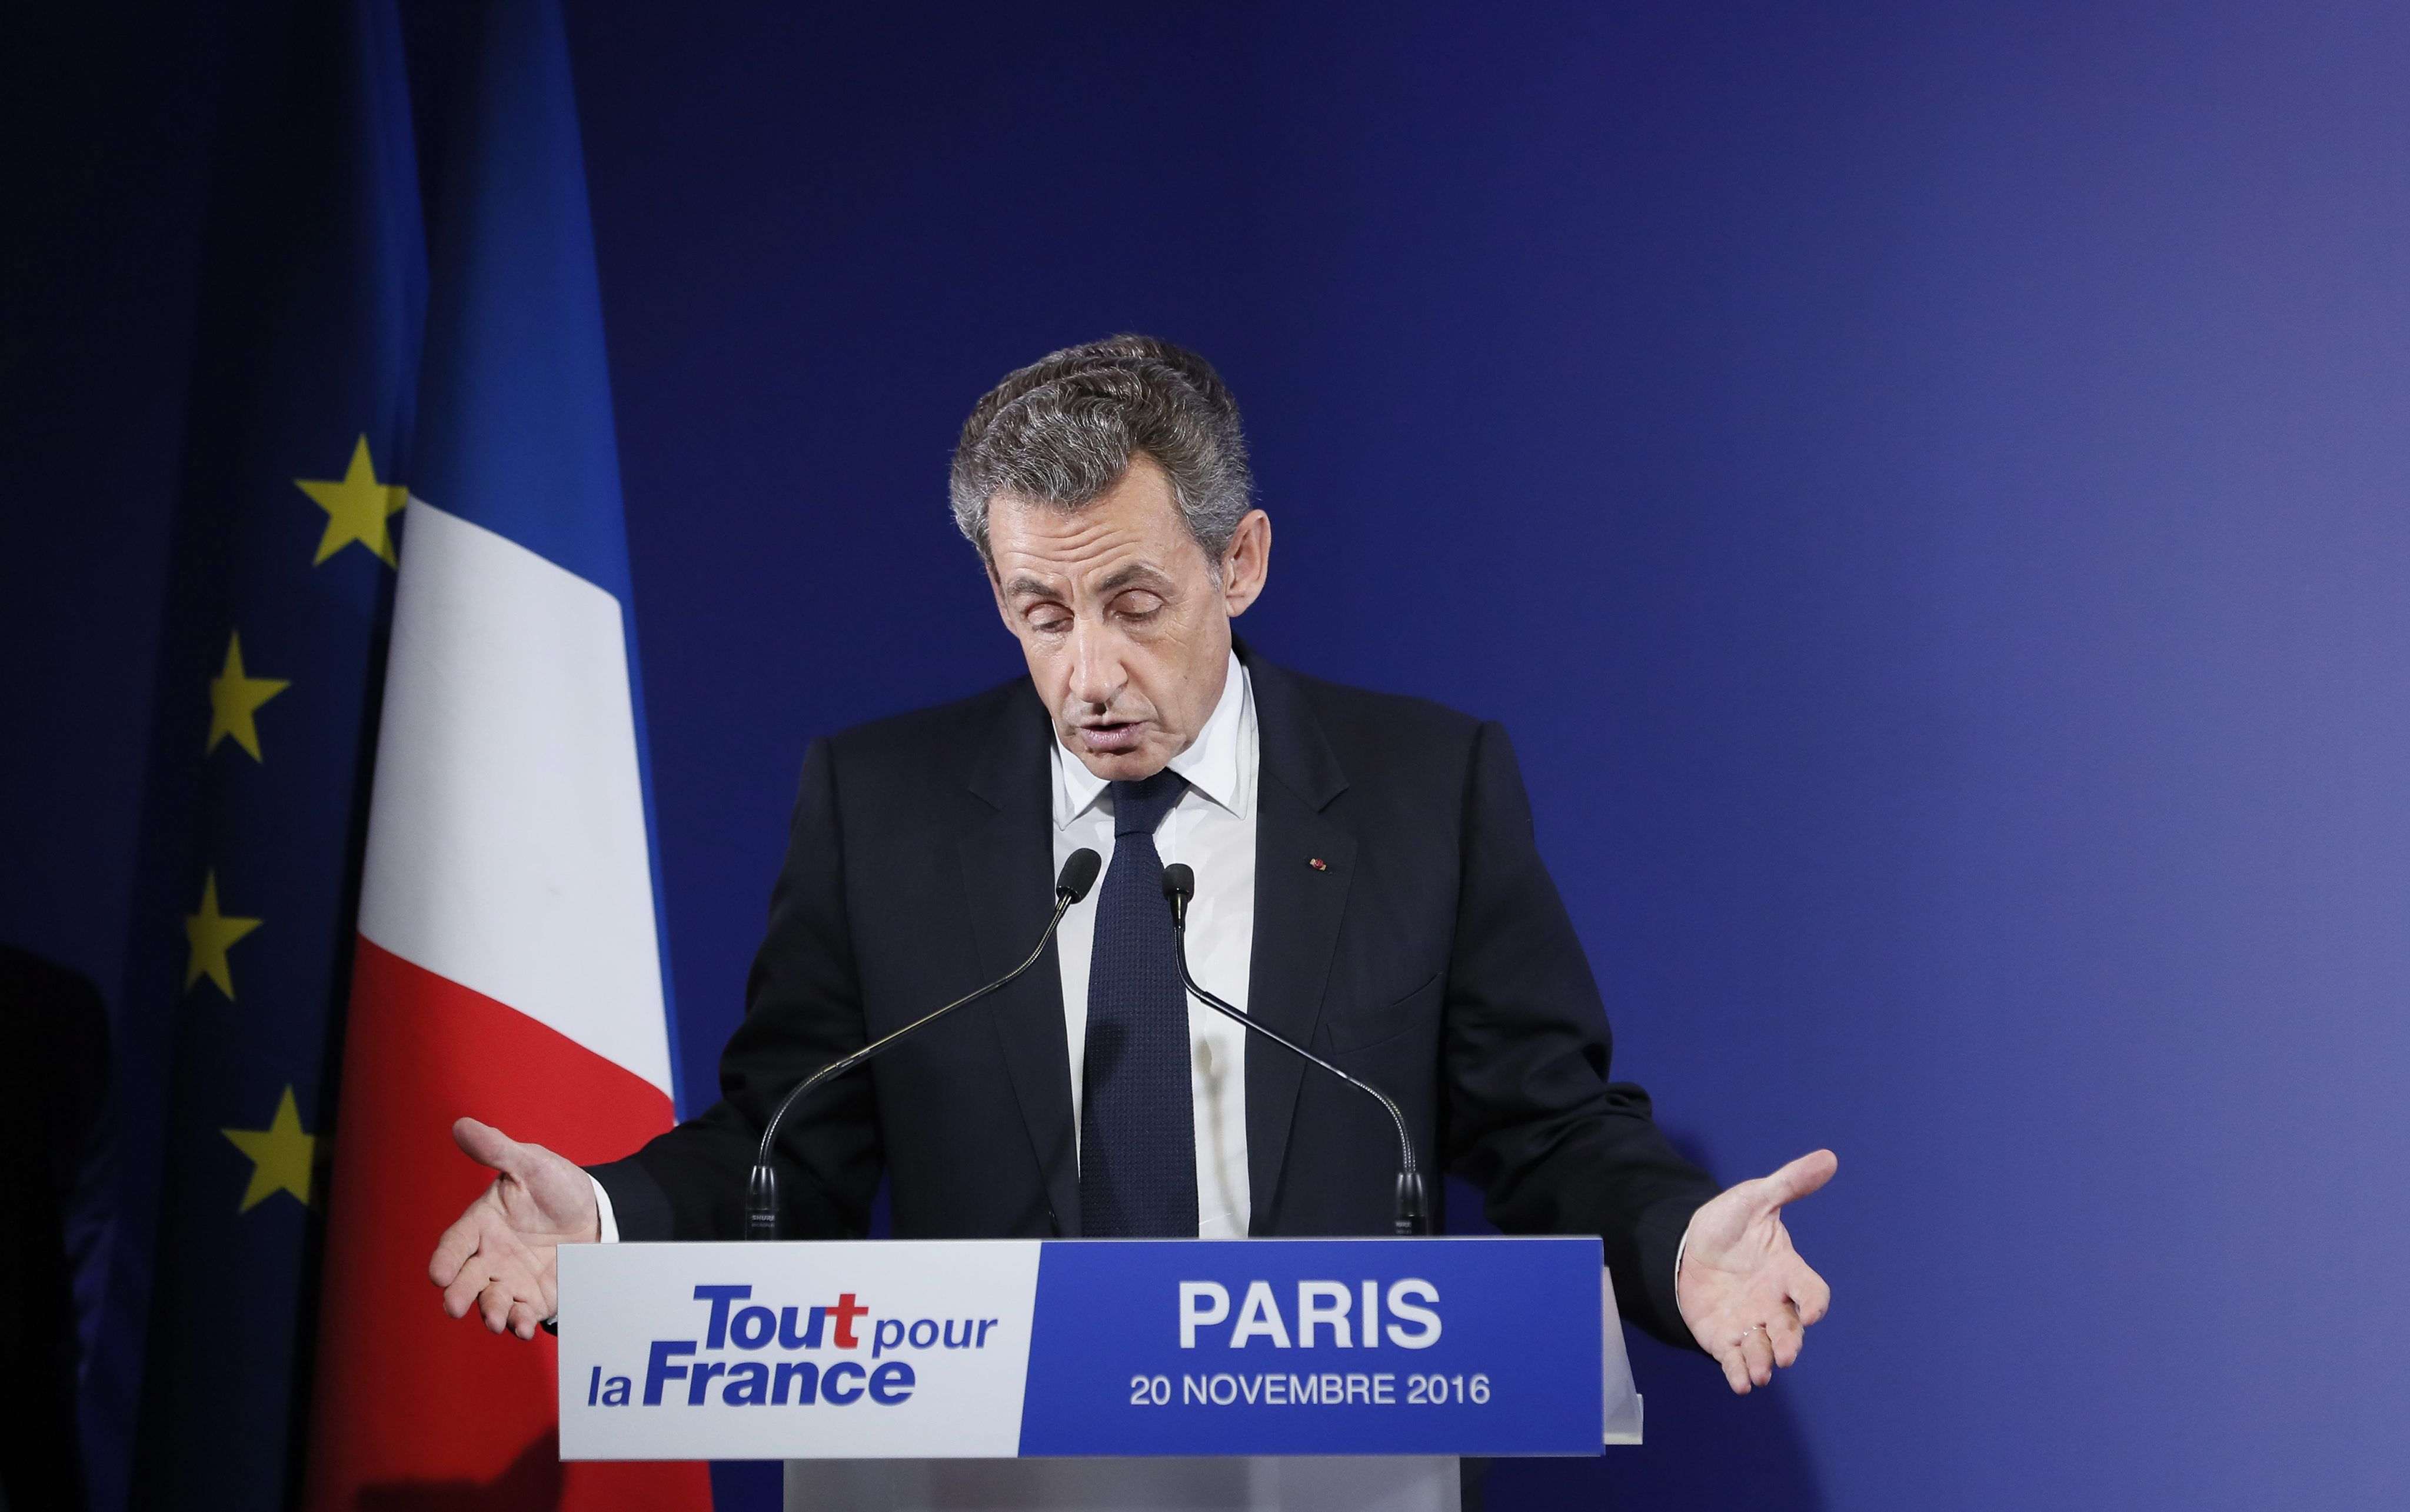 Comença el judici a Sarkozy, però s'ajorna immediatament després